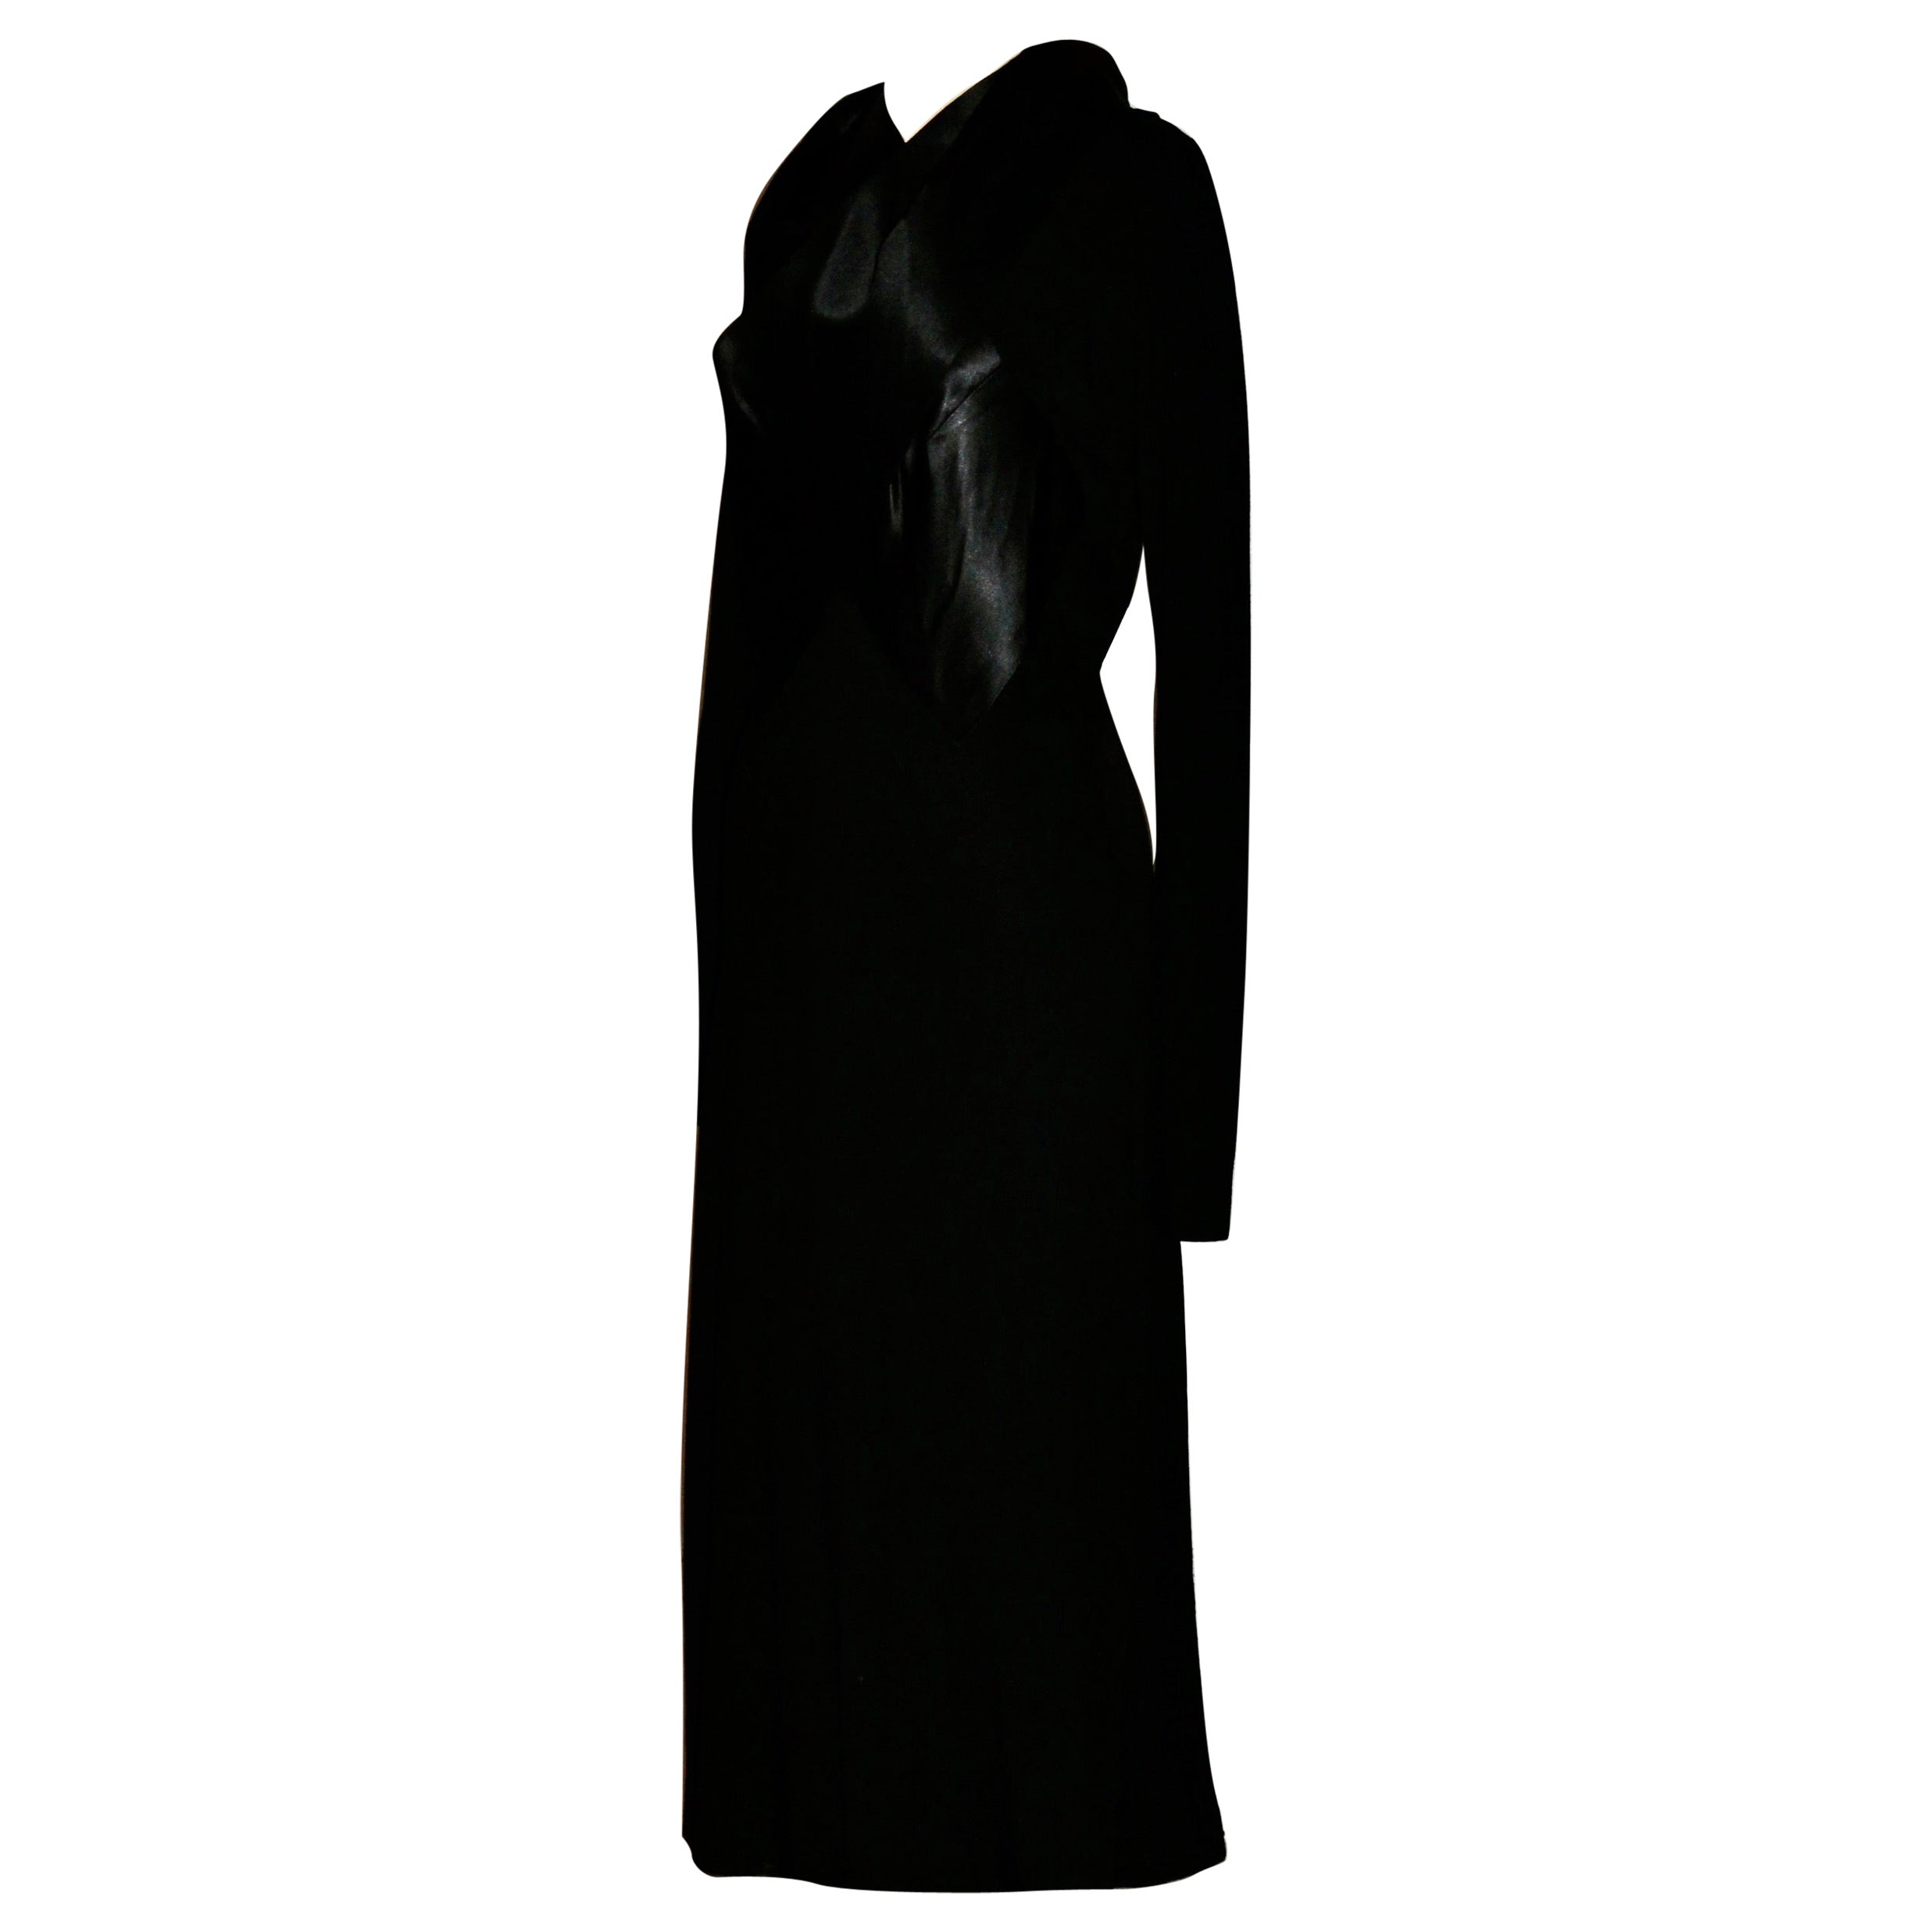 France Vramant Black Crepe Silk Evening Gown, 1930's Paris  For Sale